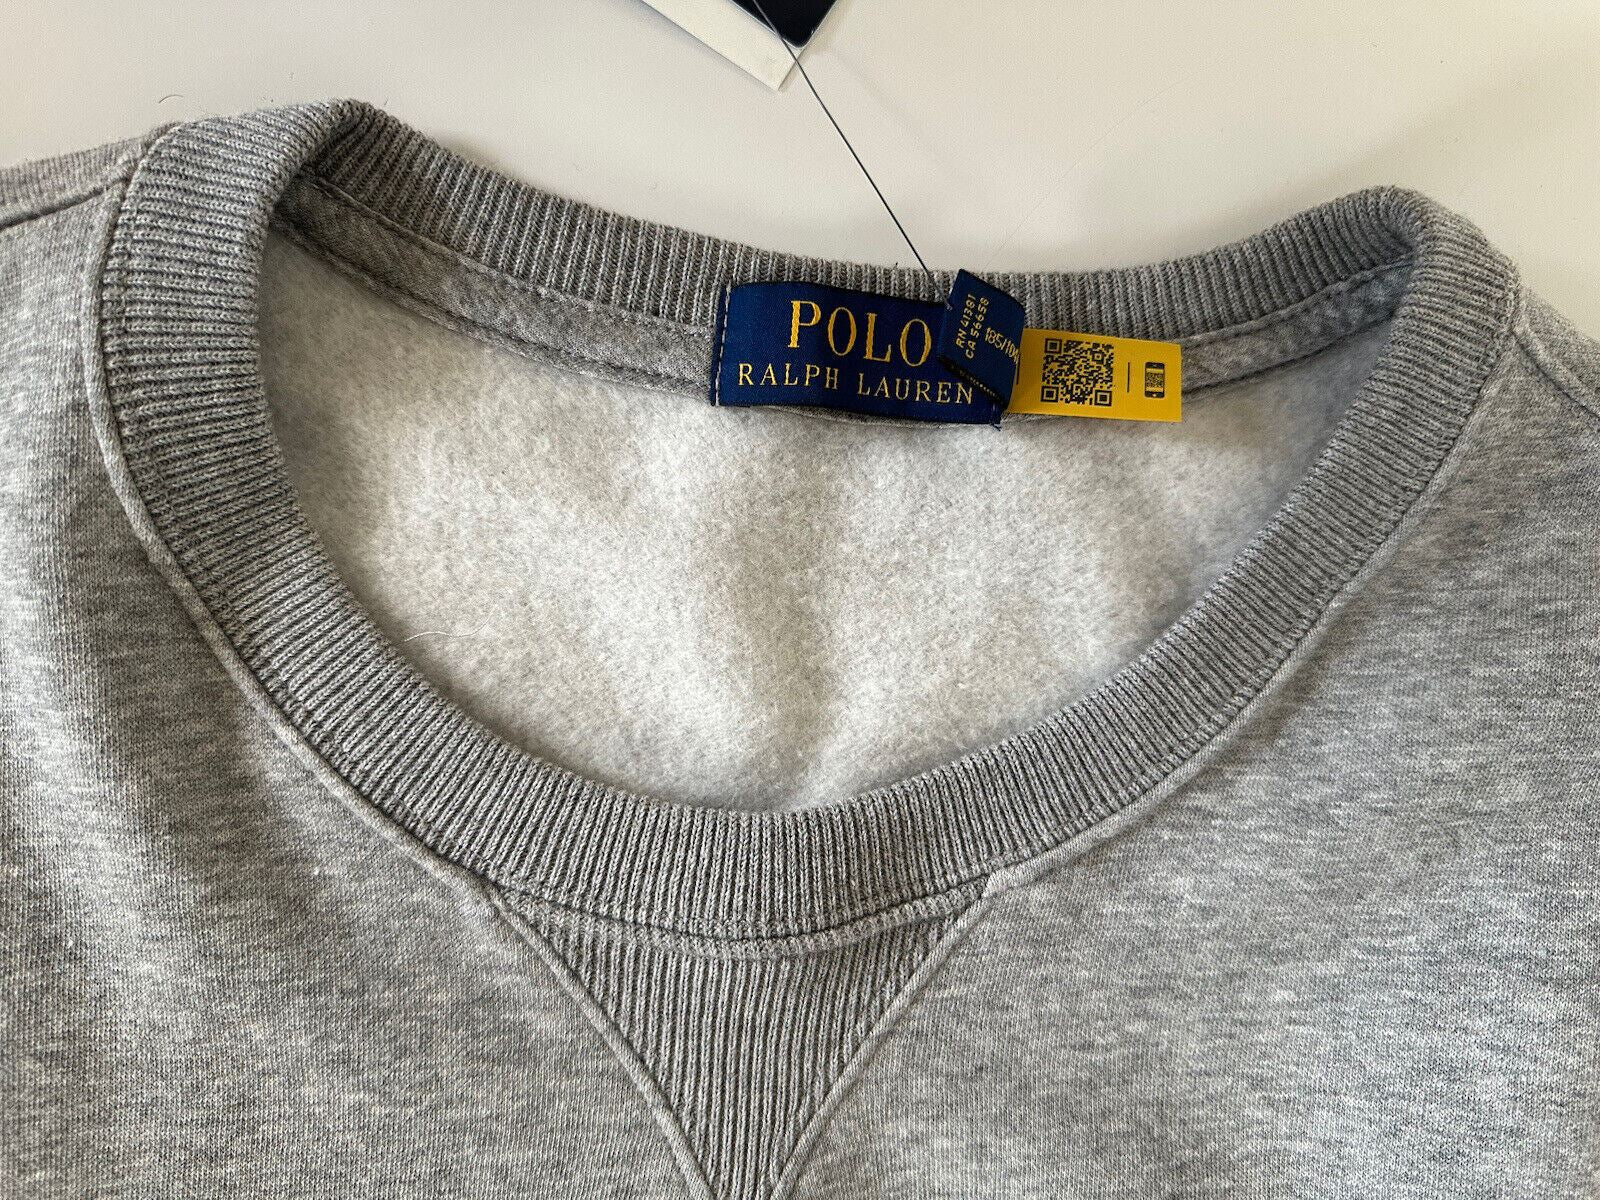 Новый свитшот Polo Ralph Lauren Bear, серый цвет 2XL/2TG, стоимостью 168 долларов. 